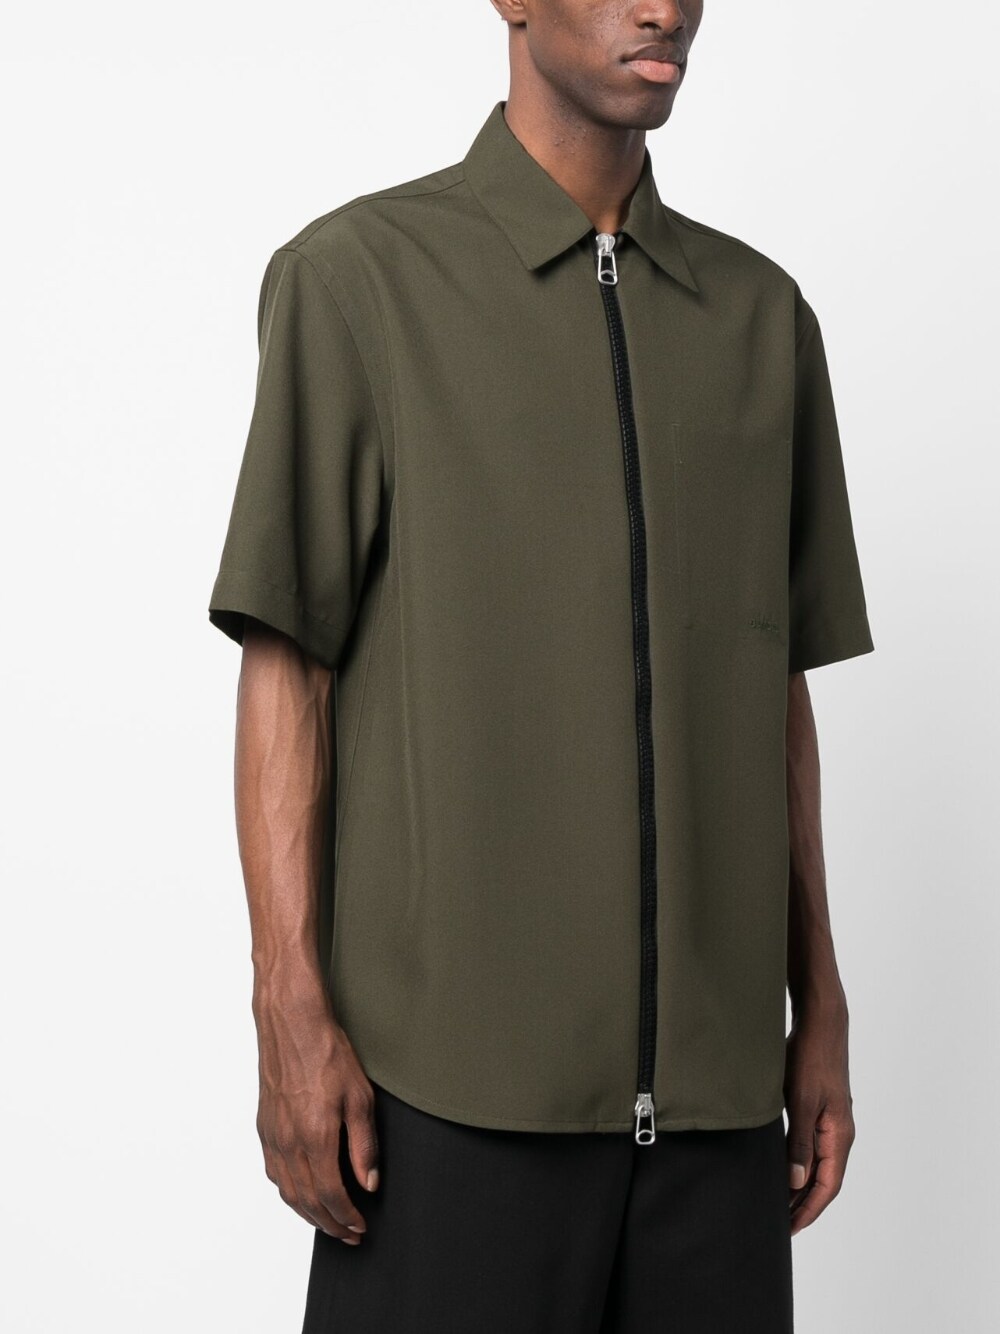 OAMC IAN SHIRT ウールシャツ 21SS サイズS タグ付き - シャツ